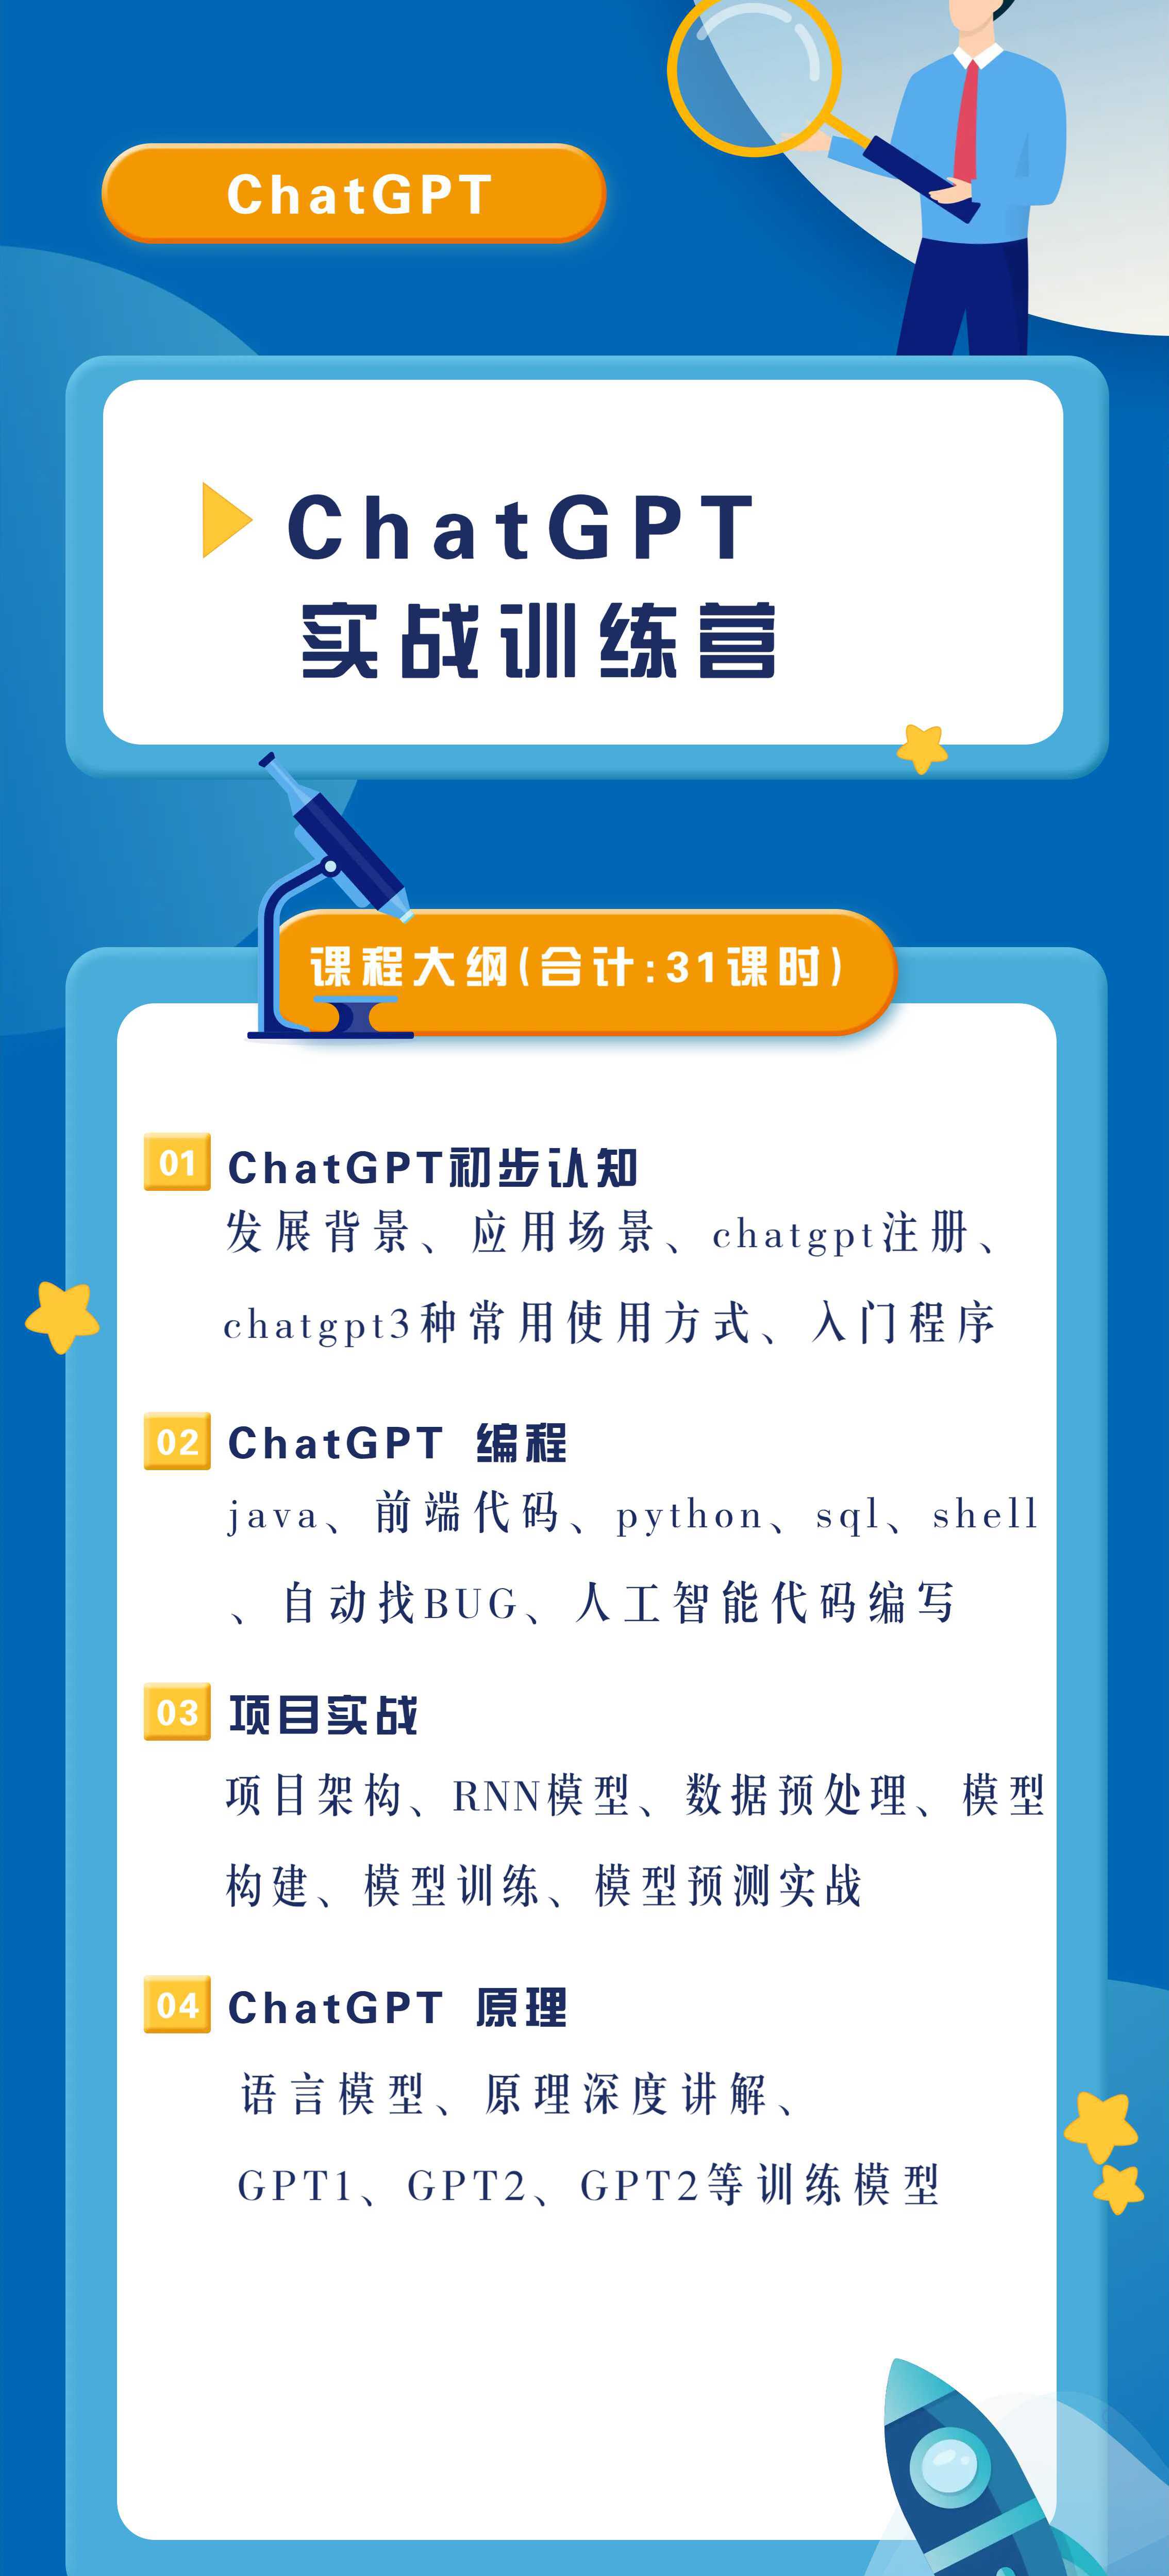 ChatGPT训练营 (1).jpeg